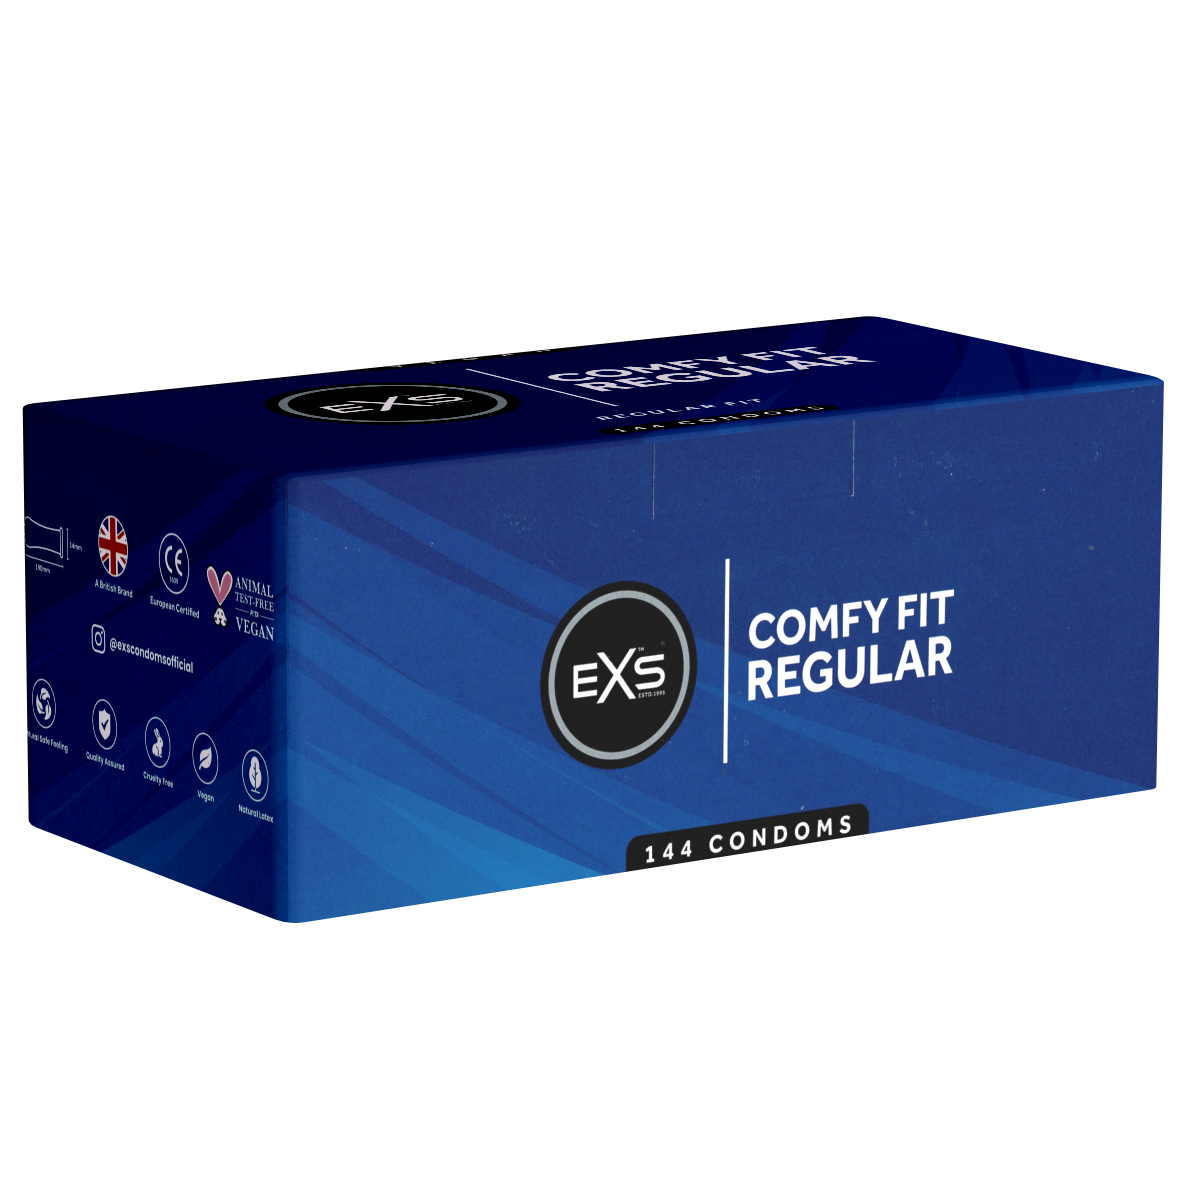 EXS Vorratspackung «Regular» Comfy Fit, 144 Kondome mit 65mm-Kopfteil